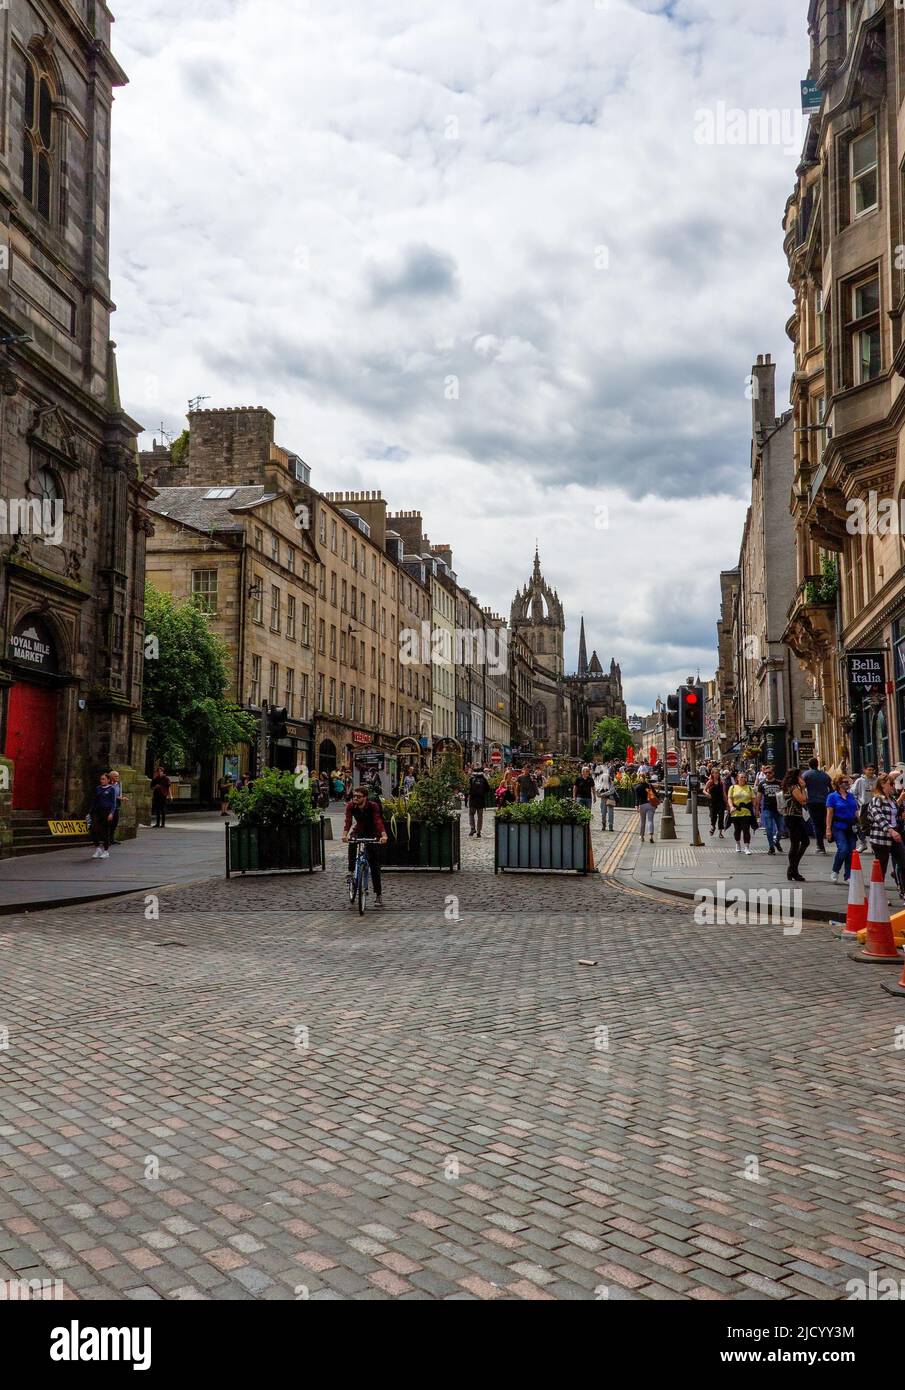 Touristen und Einheimische genießen die lokalen Attraktionen und Geschäfte auf der Royal Mile, Edinburgh, Schottland, Großbritannien Stockfoto